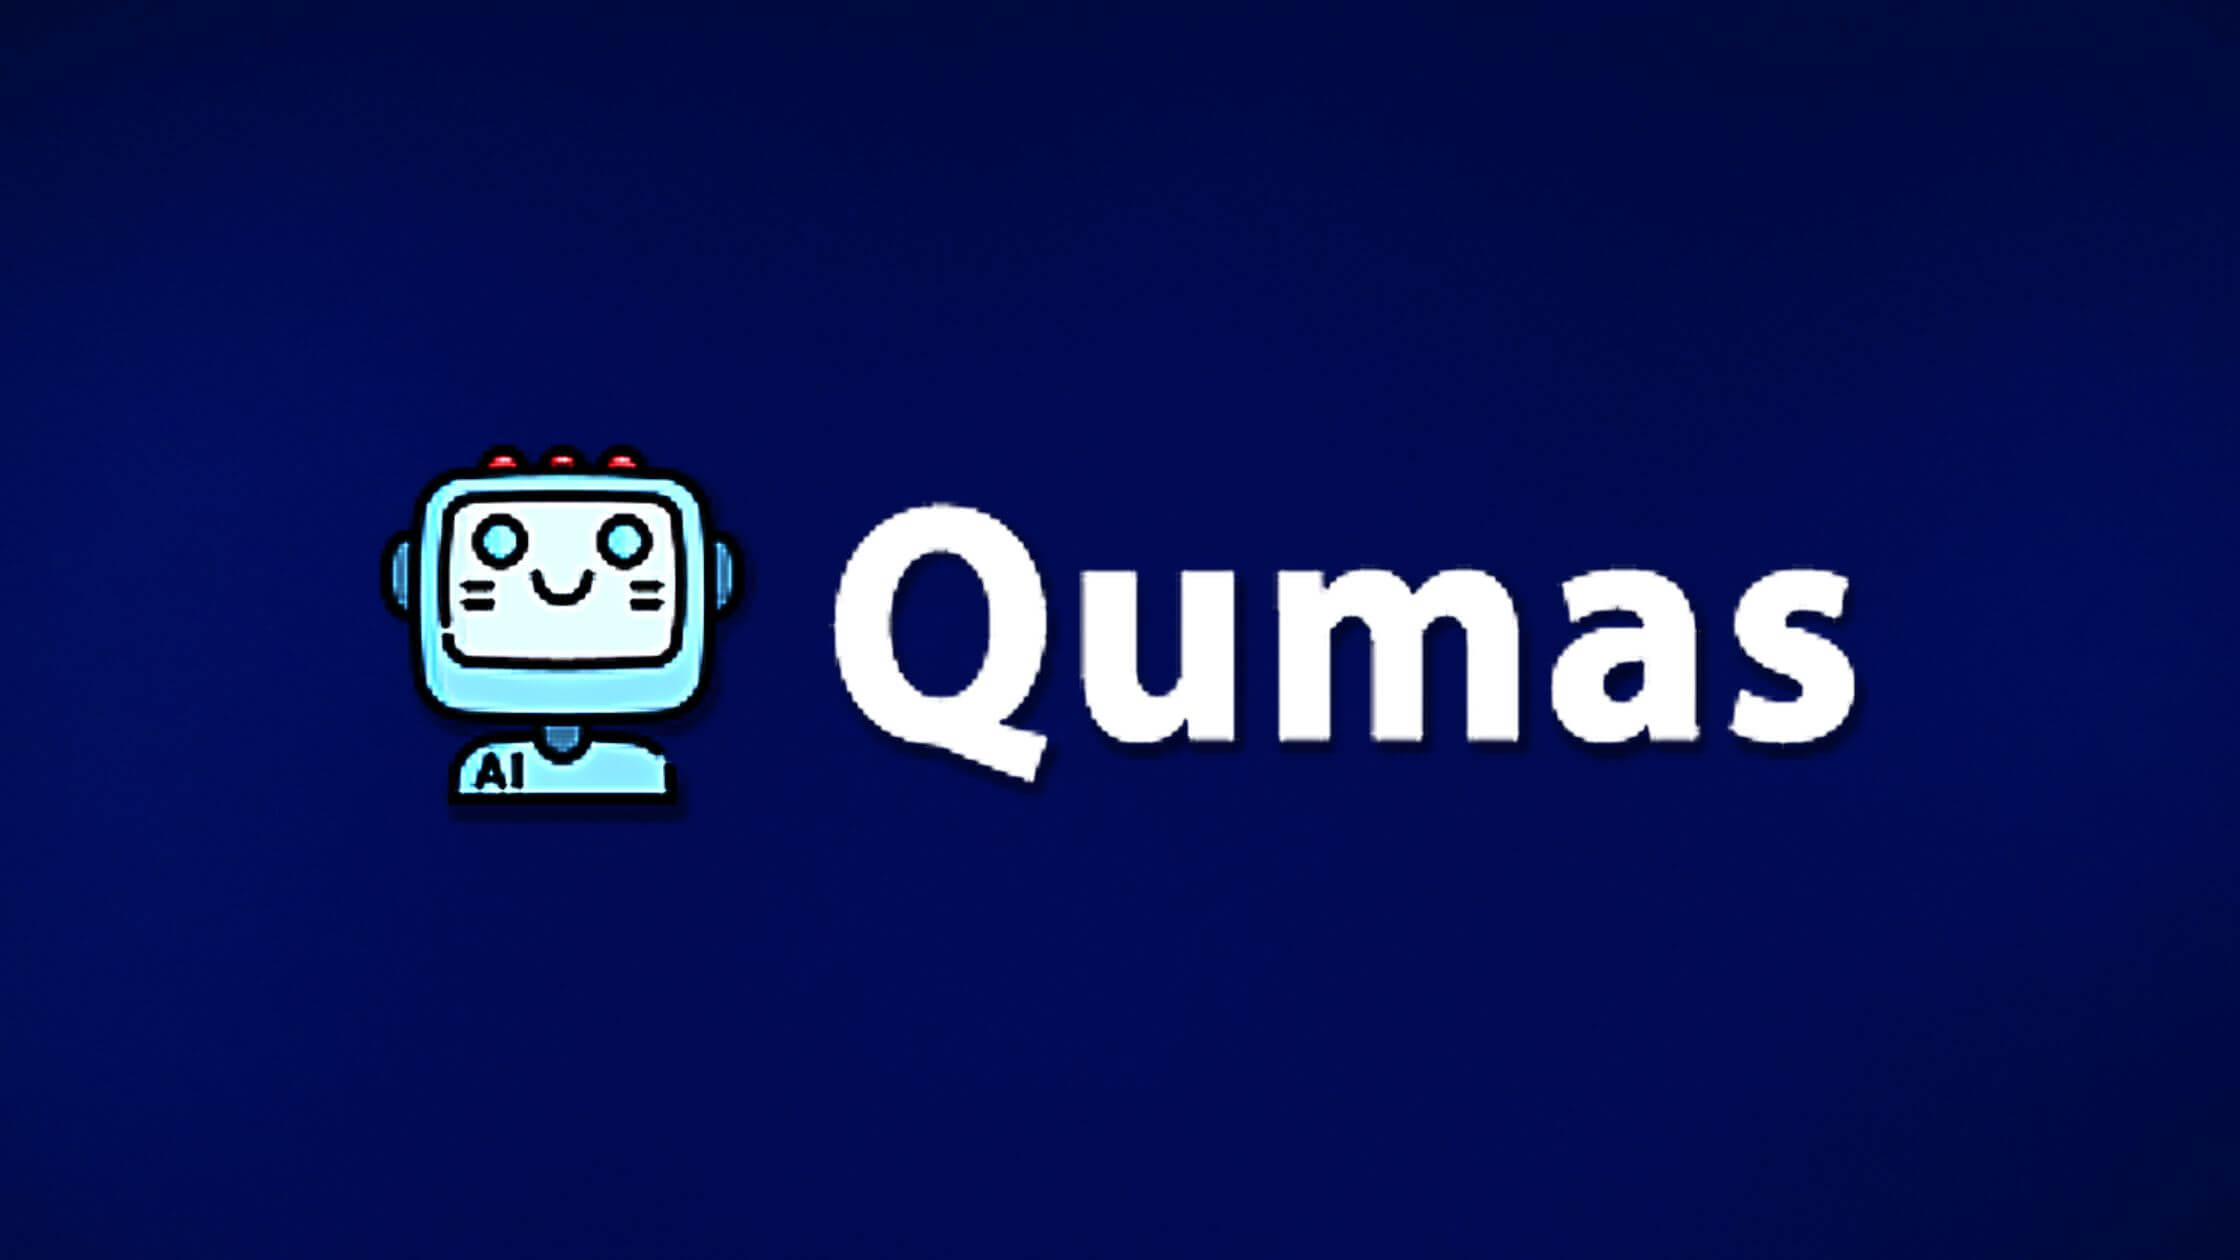 Qumas AI Review